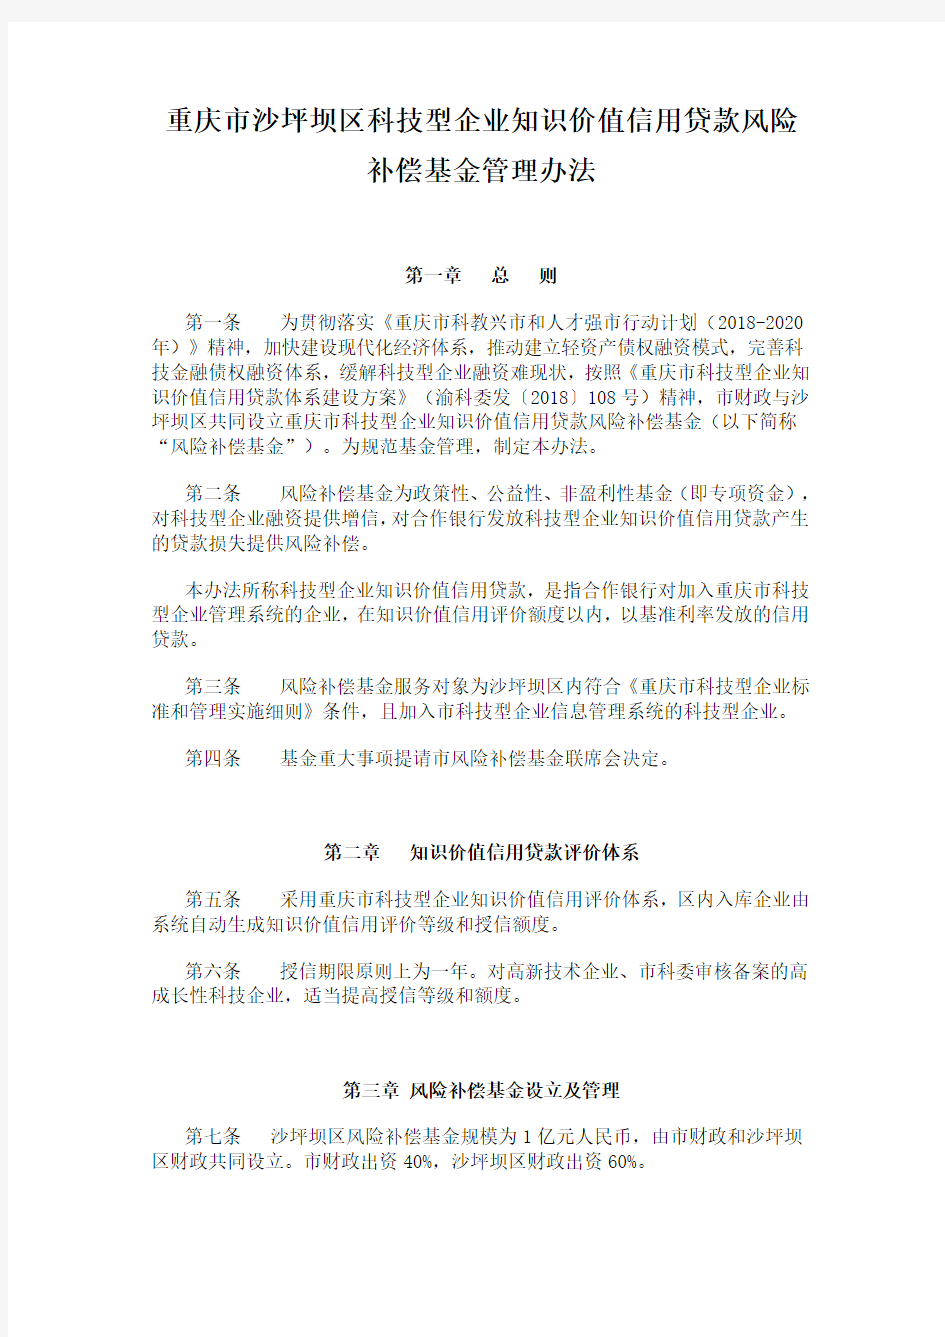 重庆市沙坪坝区科技型企业知识价值信用贷款风险补偿基金管理办法